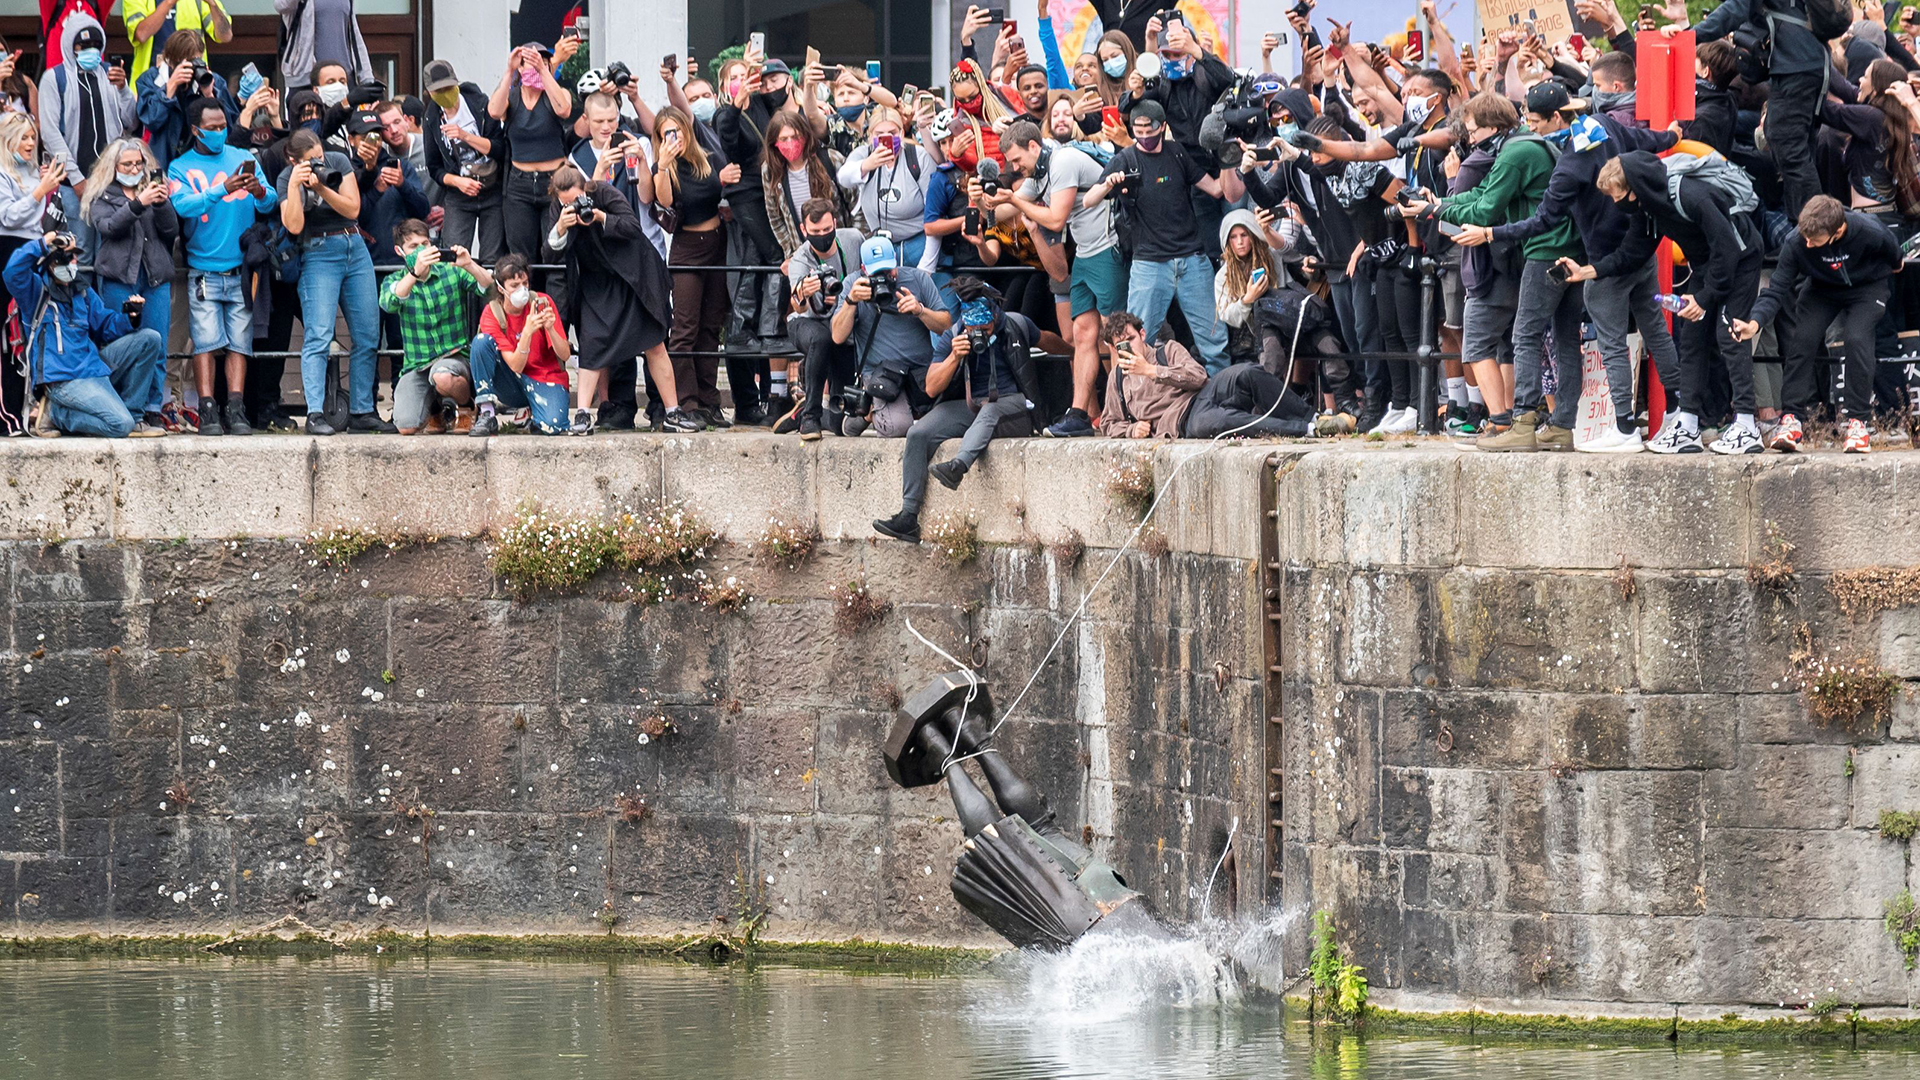 Die Statue von Edward Colston fällt in Bristol ins Wasser und wird dabei von vielen Menschen gefilmt. | KEIR GRAVIL via REUTERS